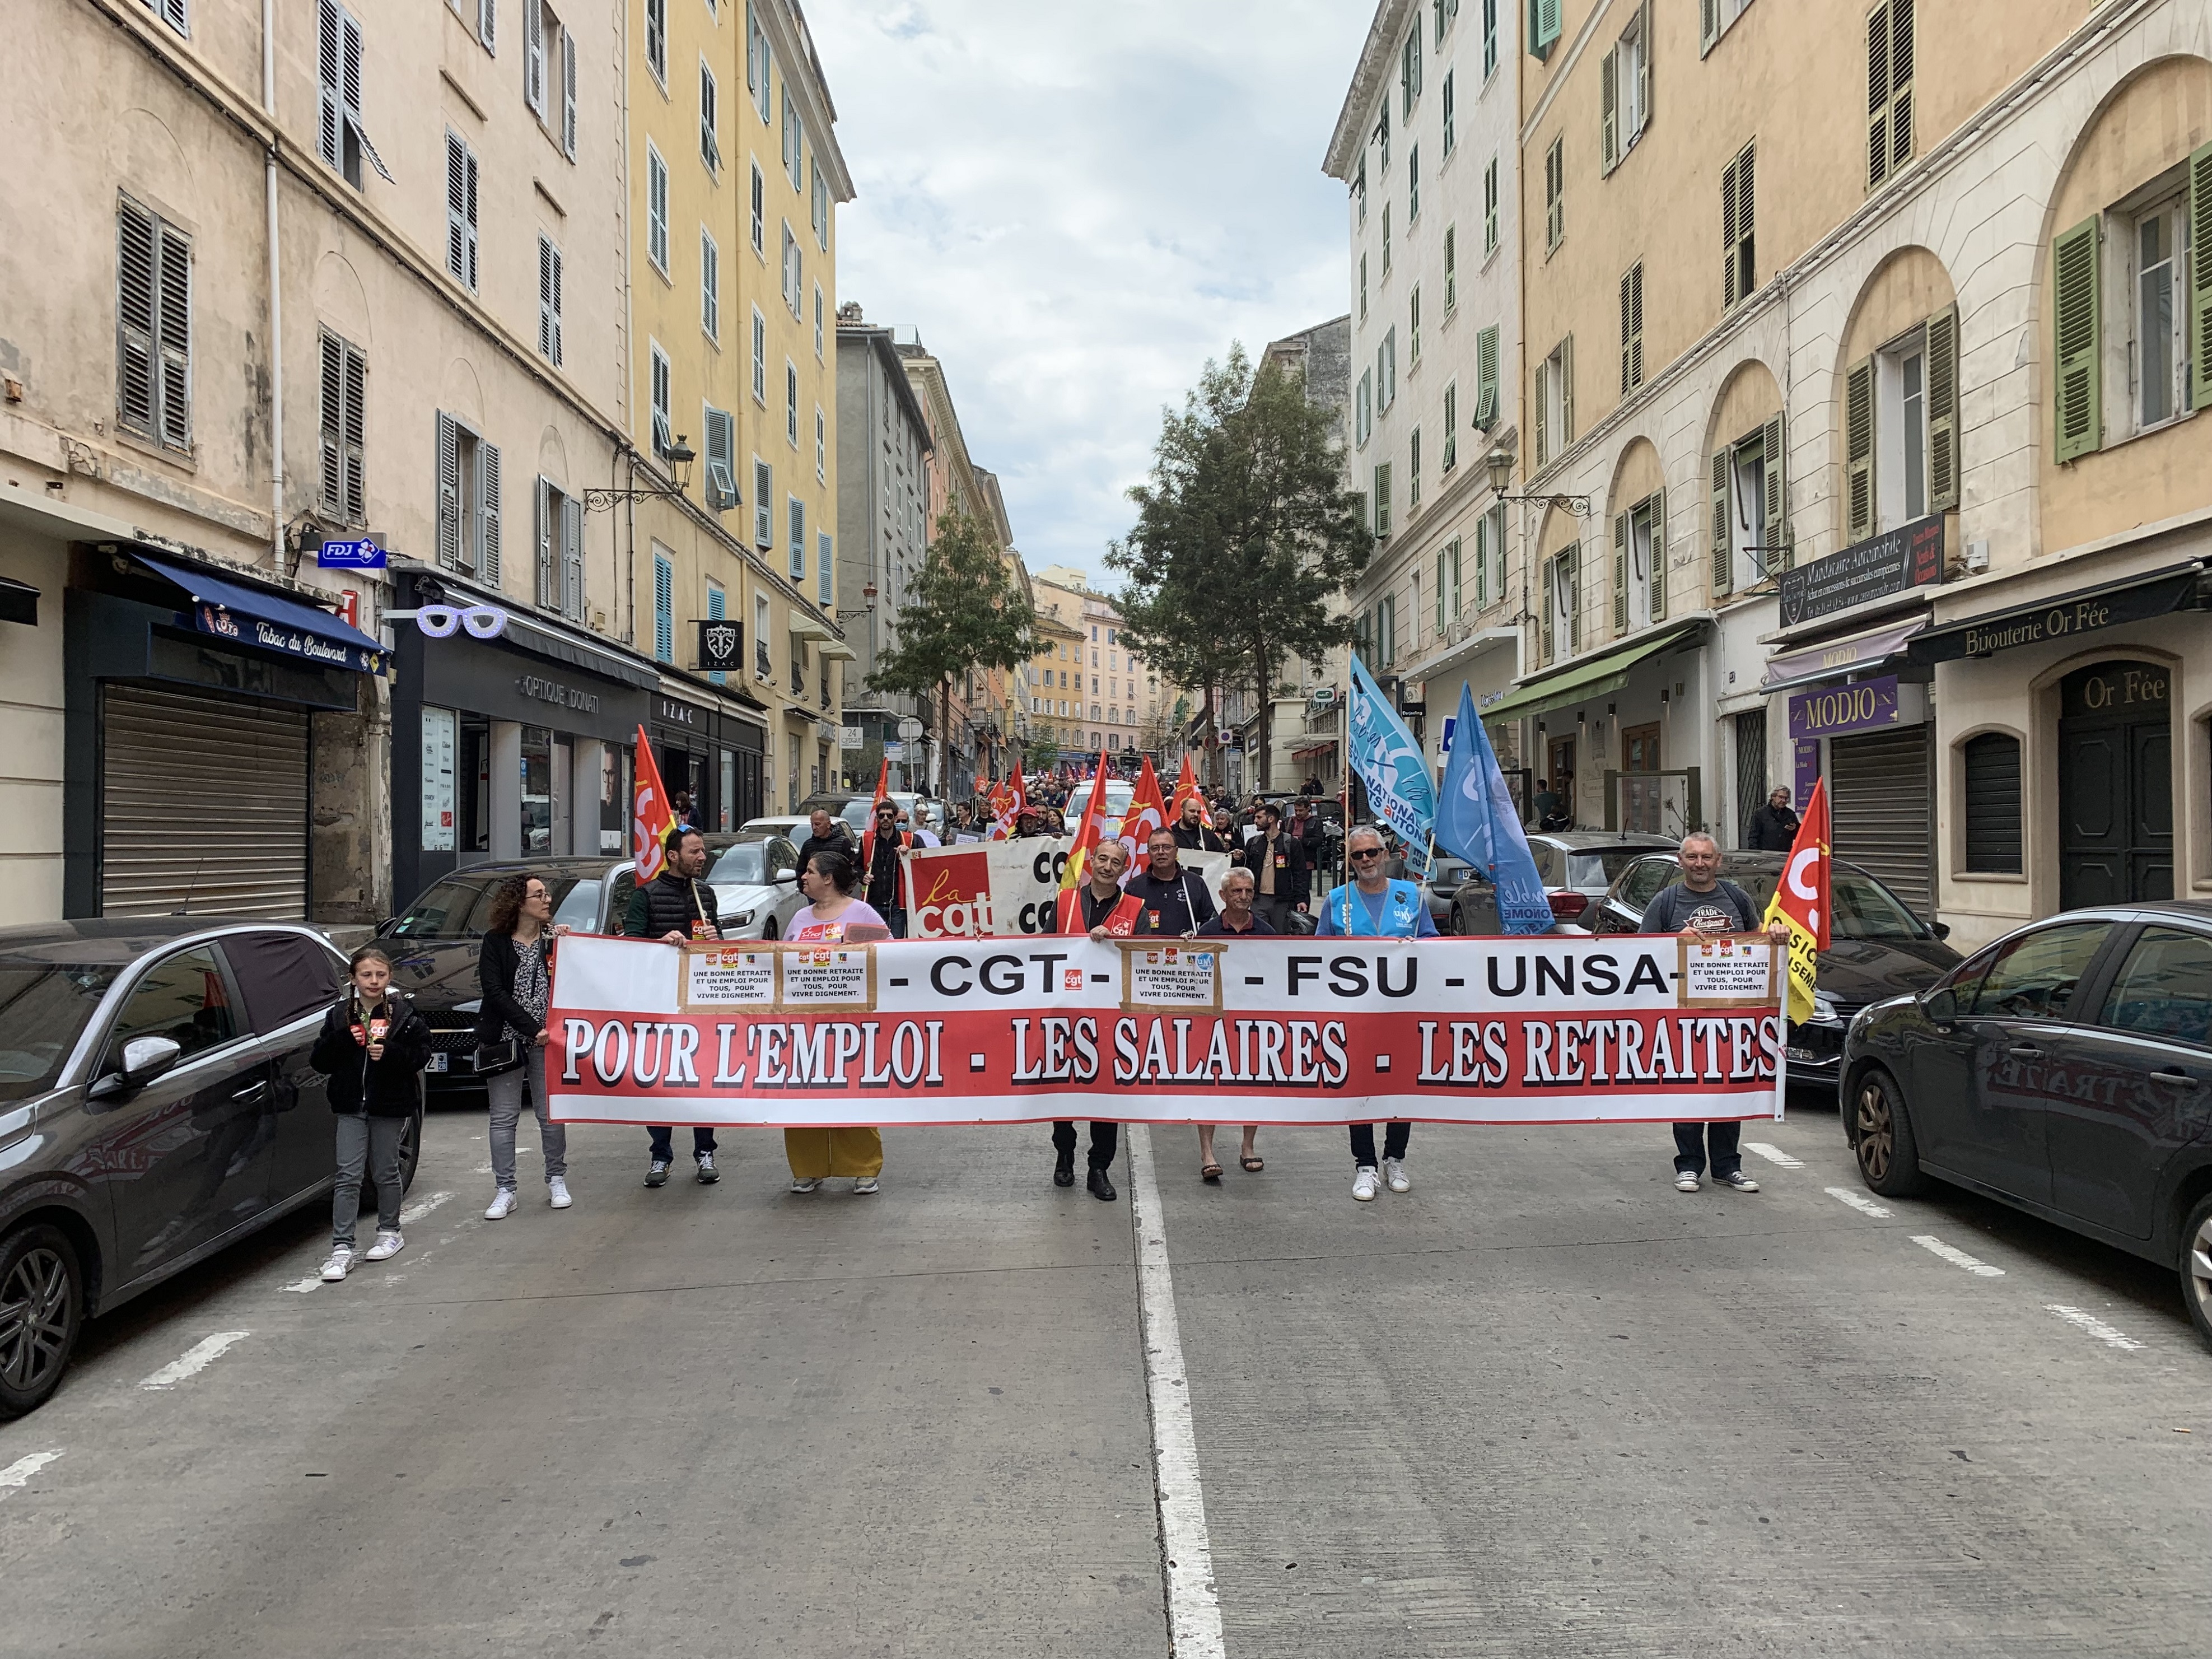 1er mai à Bastia : entre 250 et 300 personnes dans la rue